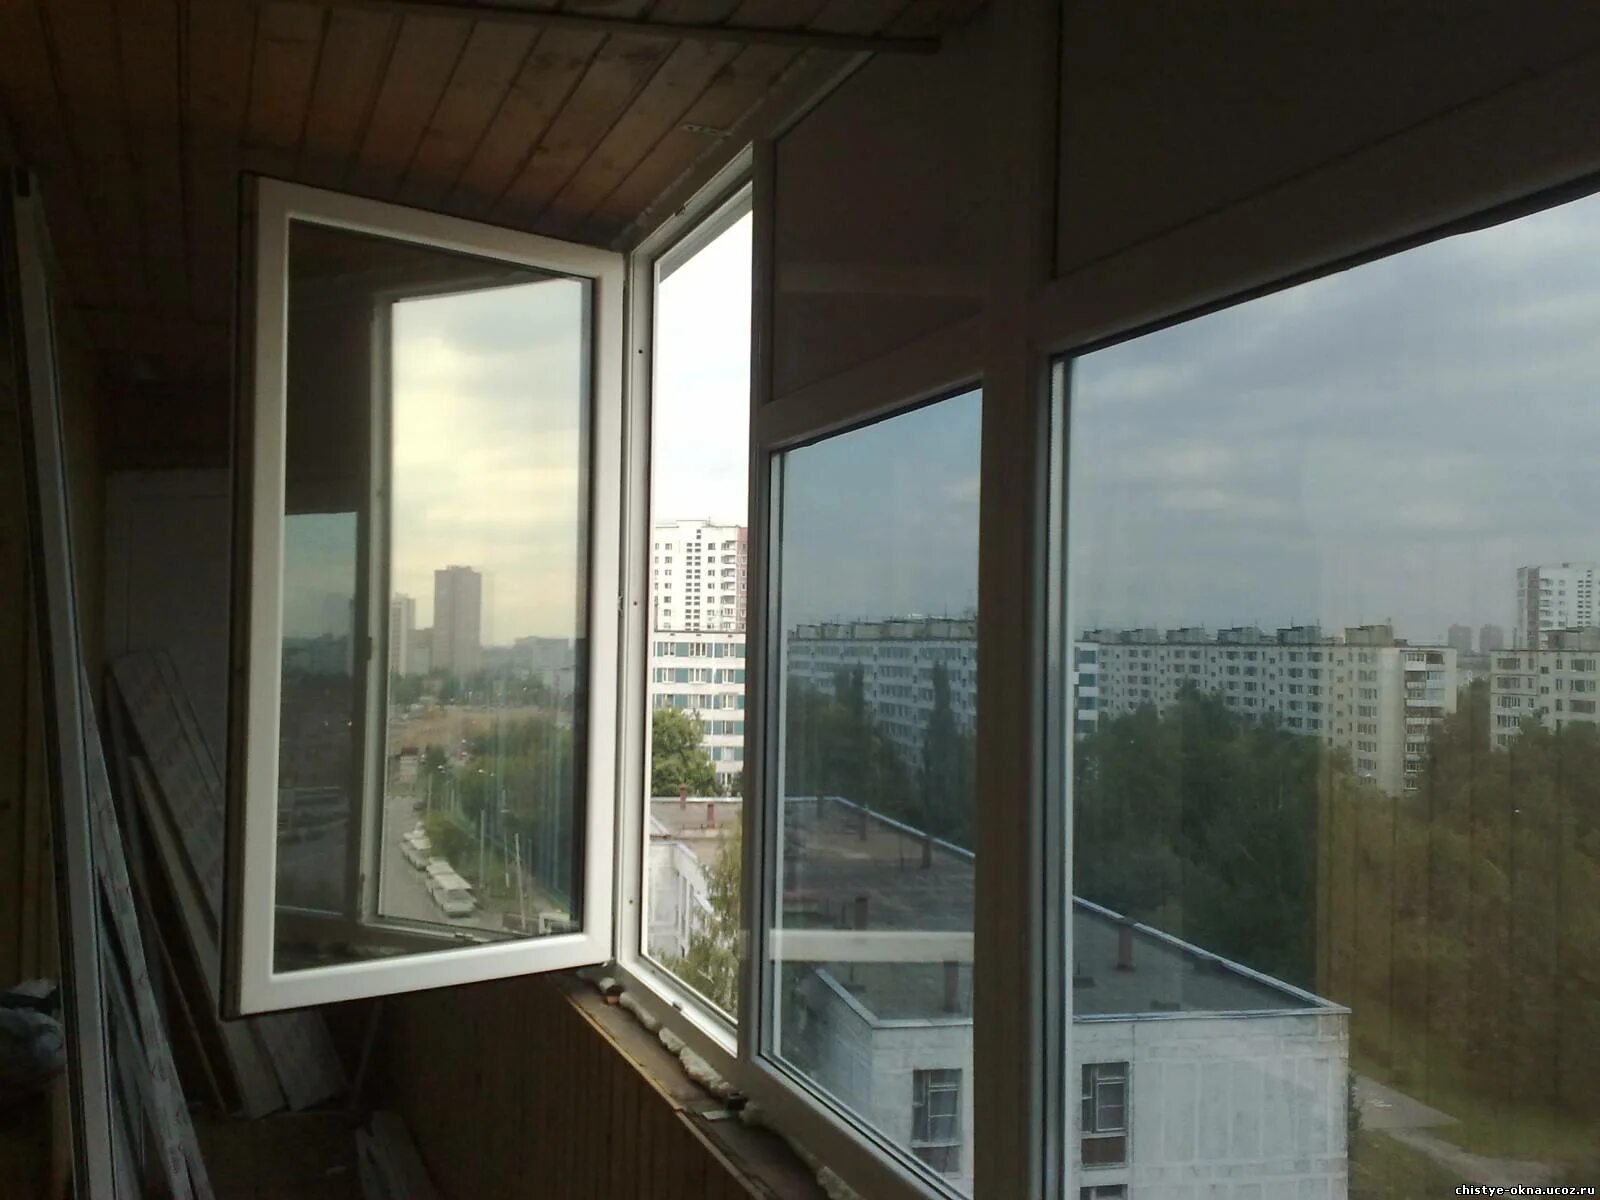 Тонированные окна на балконе. Зеркальная тонировка балкона. Тонировочная пленка для балкона. Затемненные стеклопакеты на балкон. Пленка на окна балкона